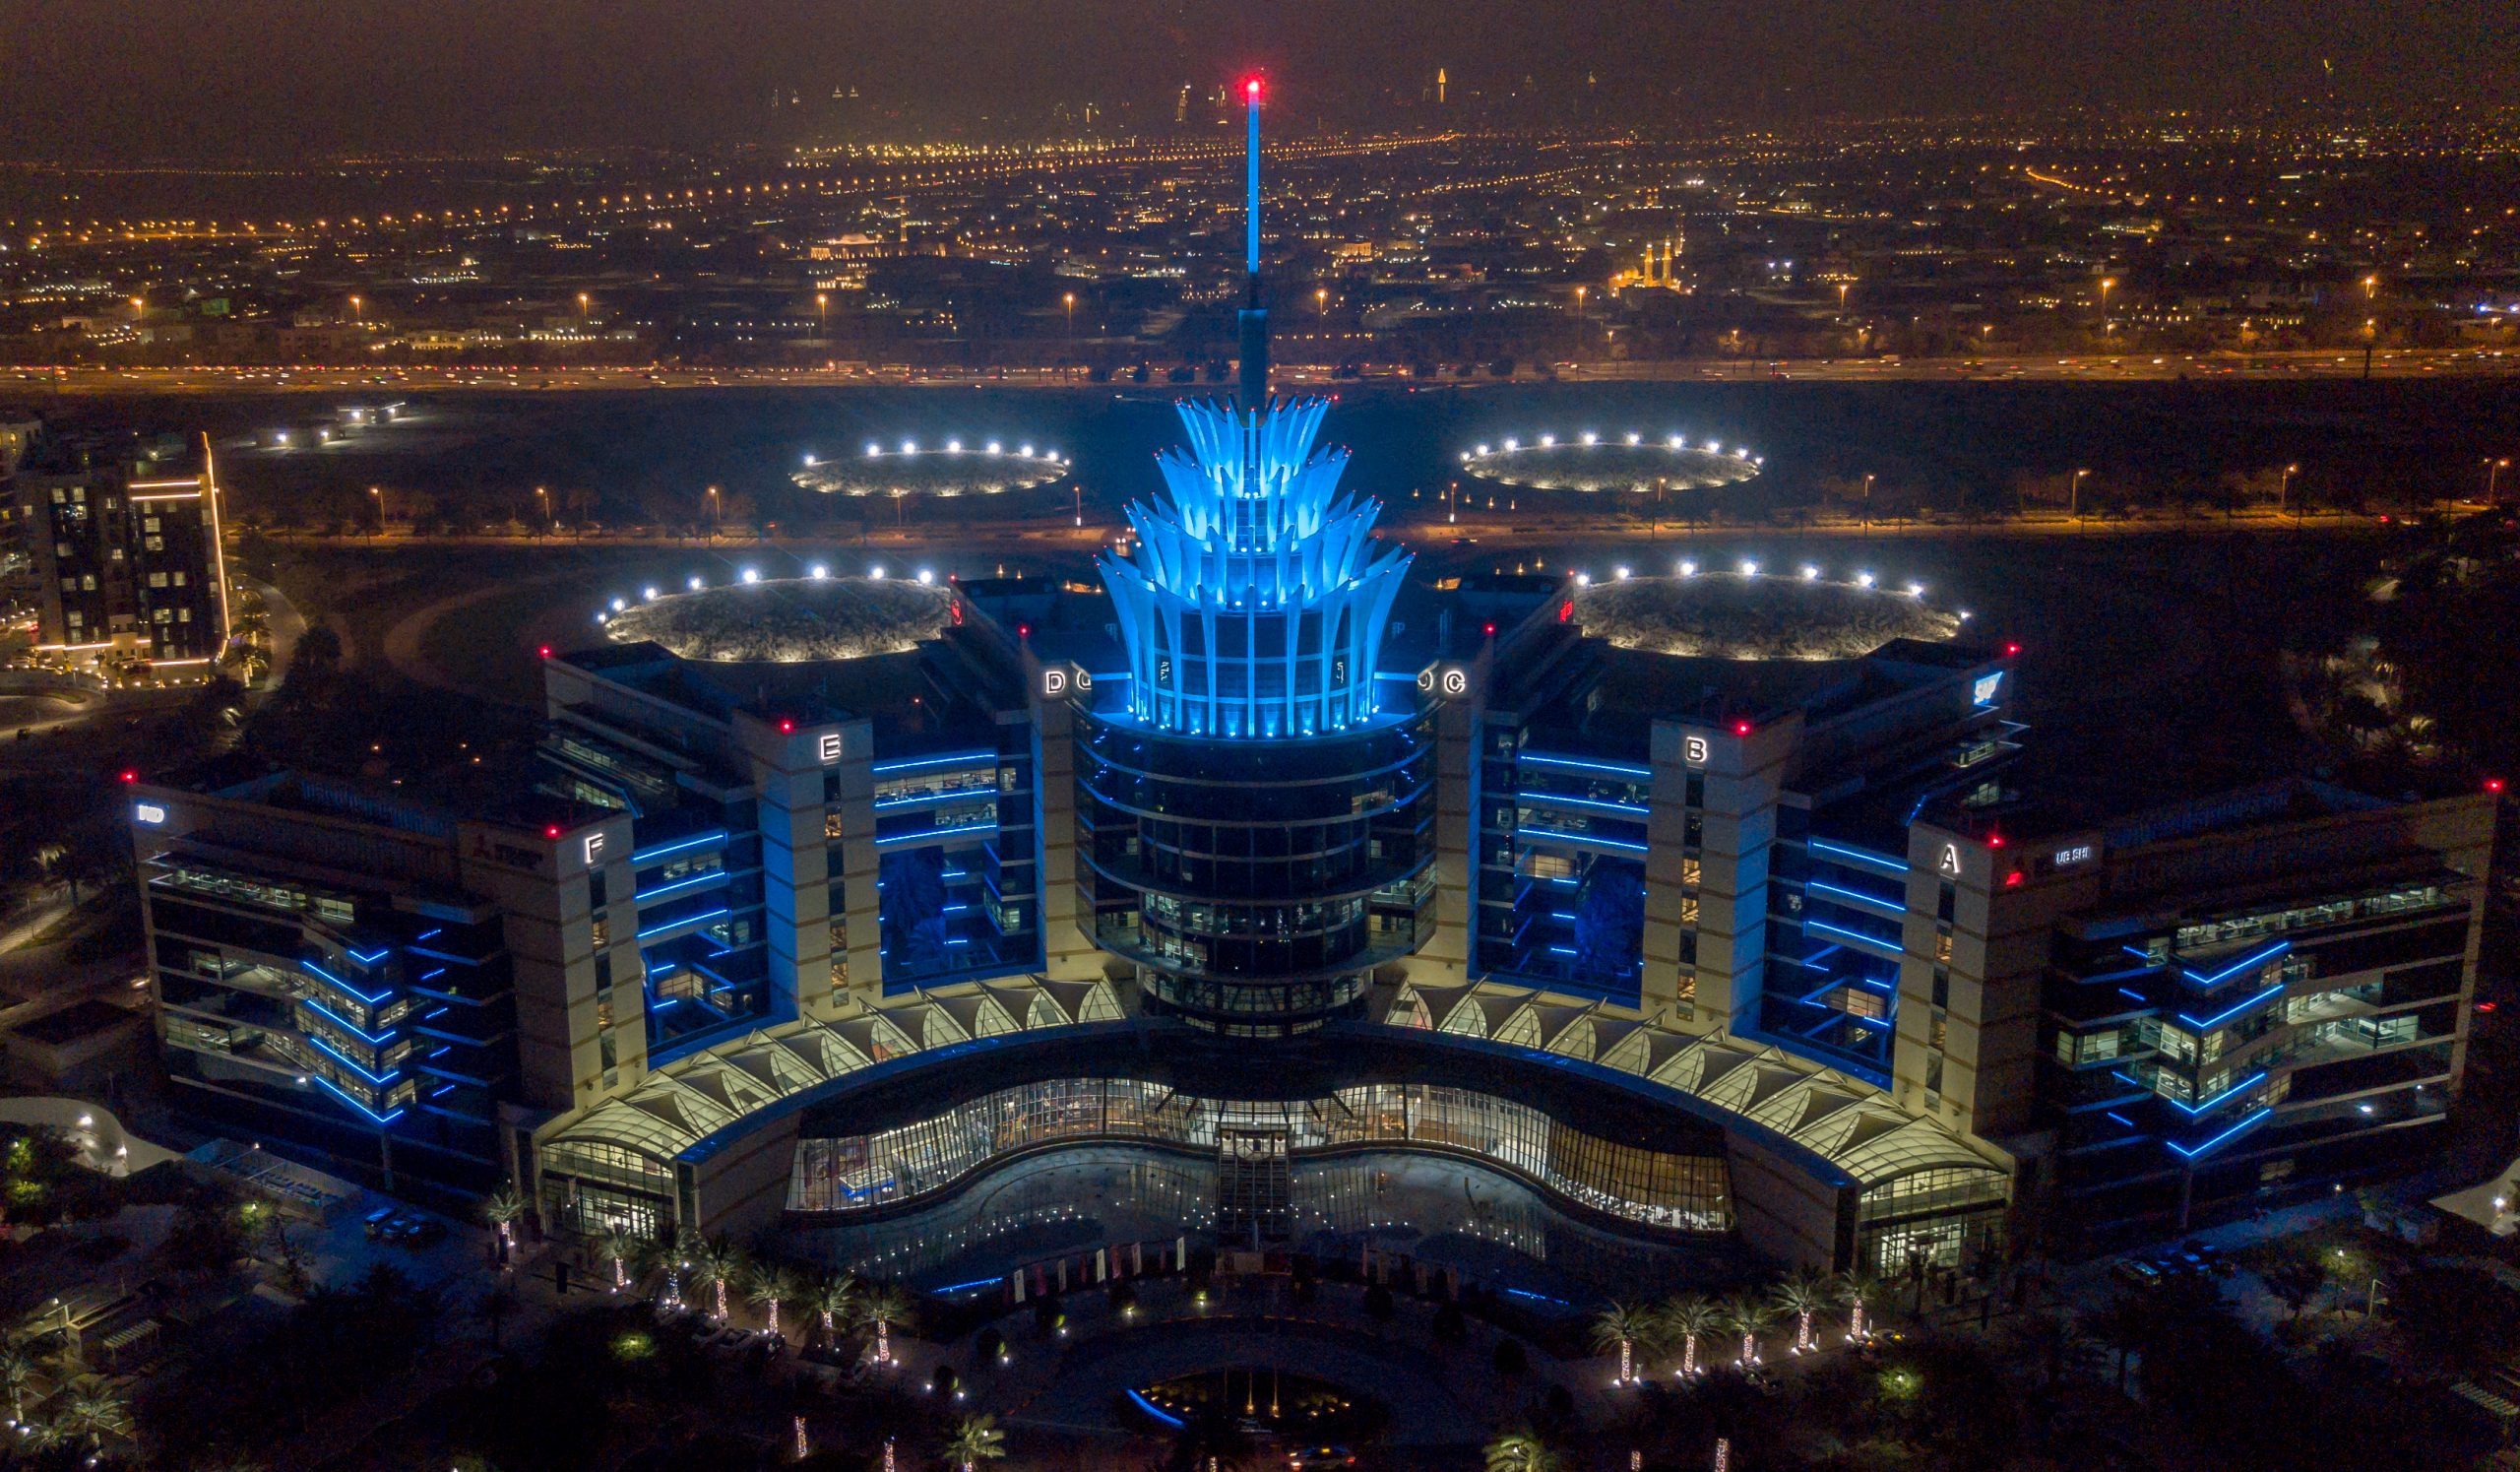 Dubai Silicon Oasis night view